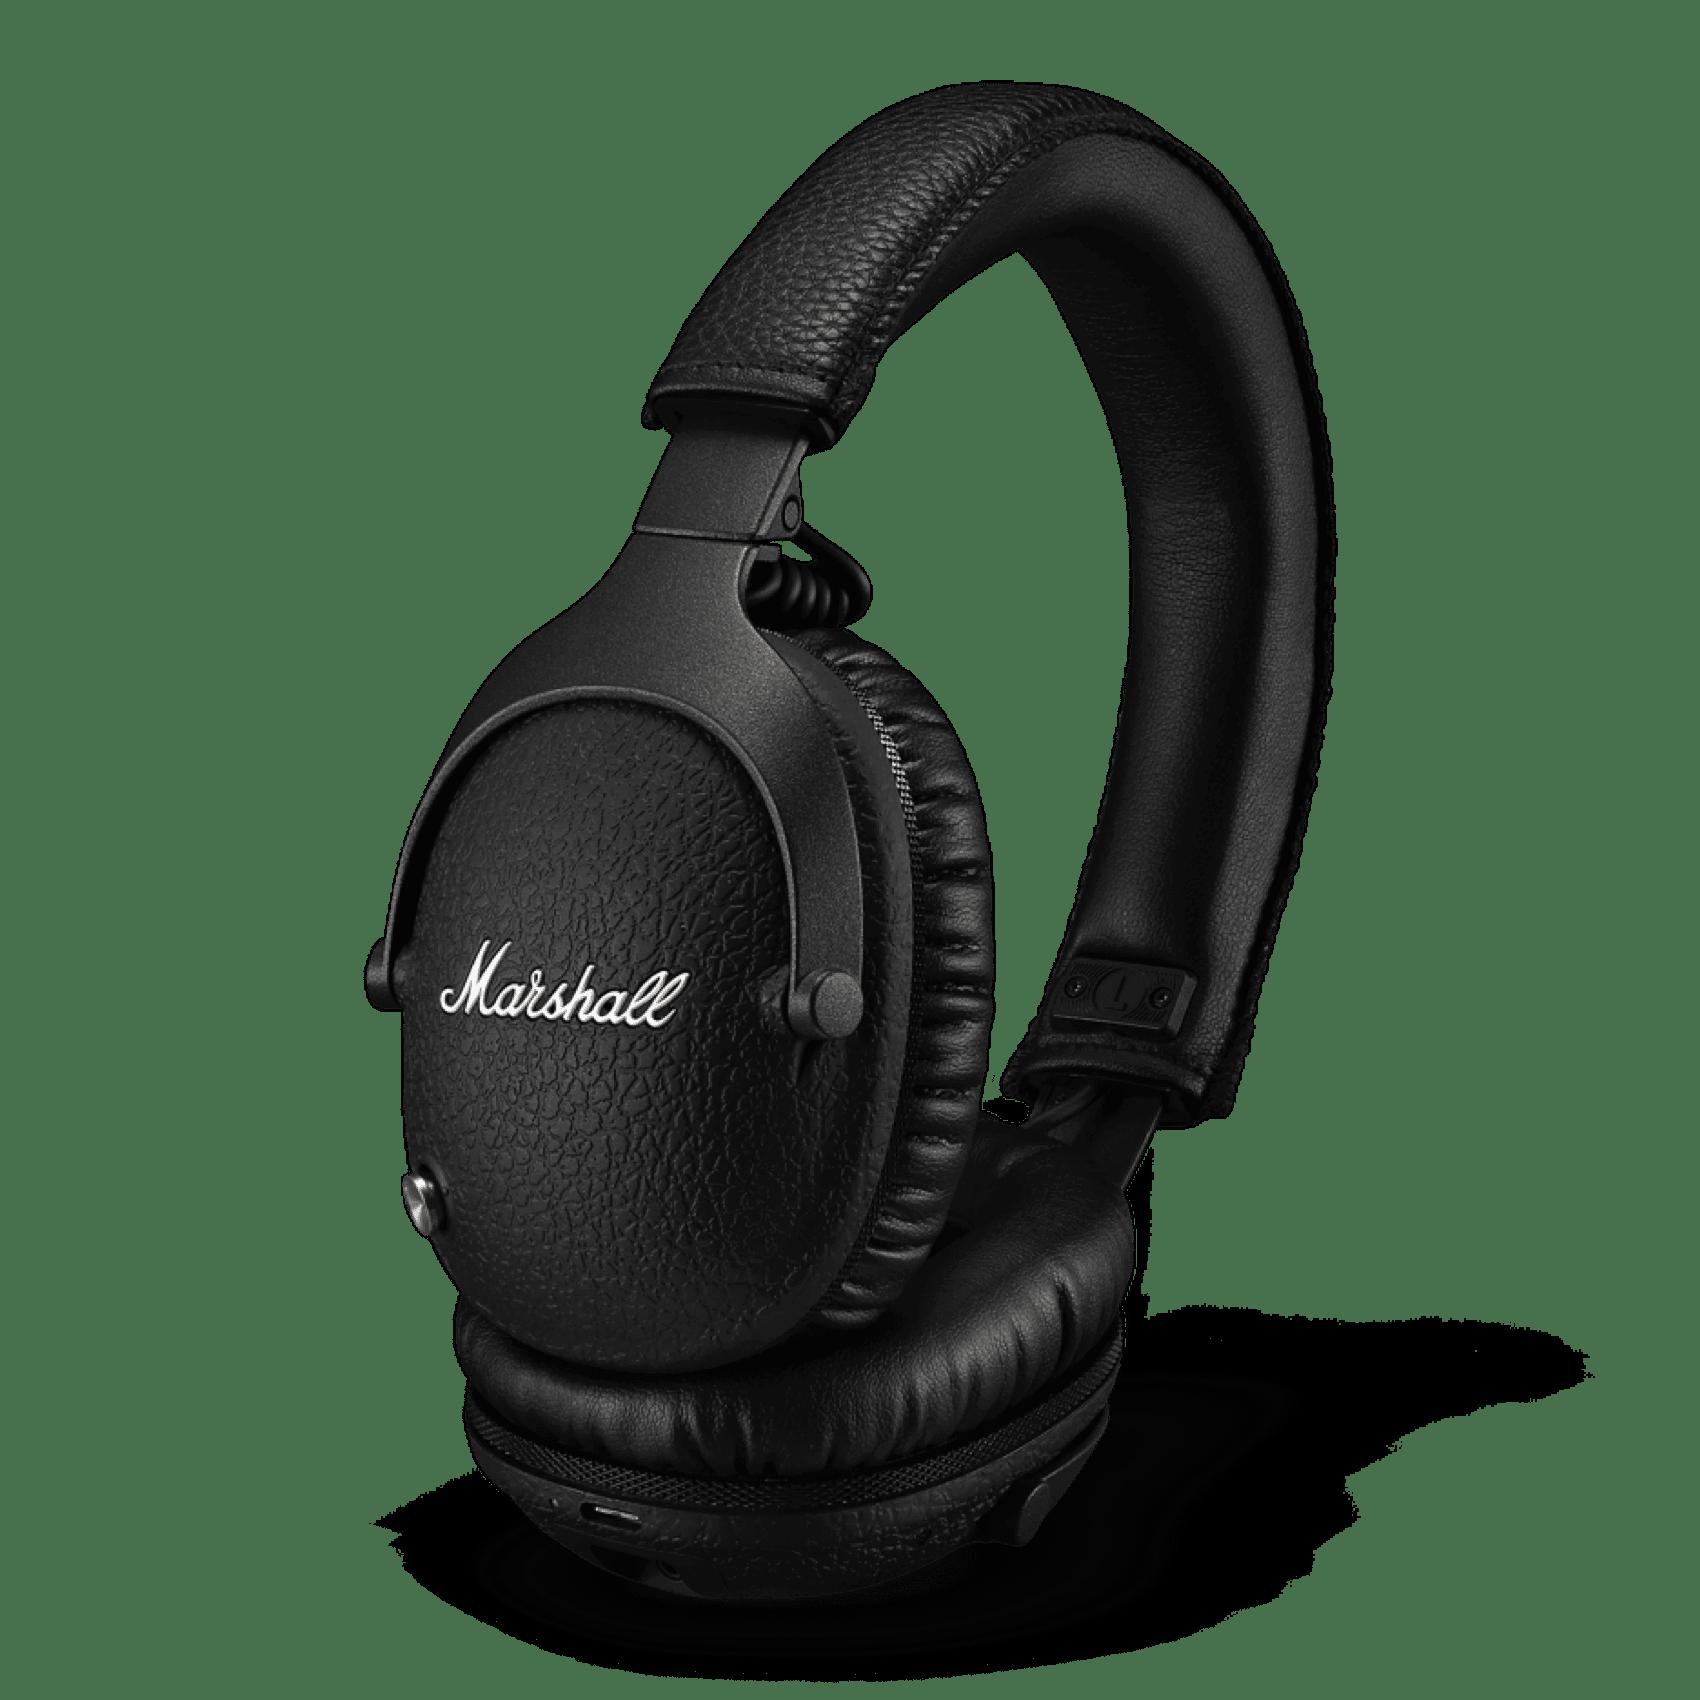 Headphones Deals March 2022: Marshall Wireless Headphones $125